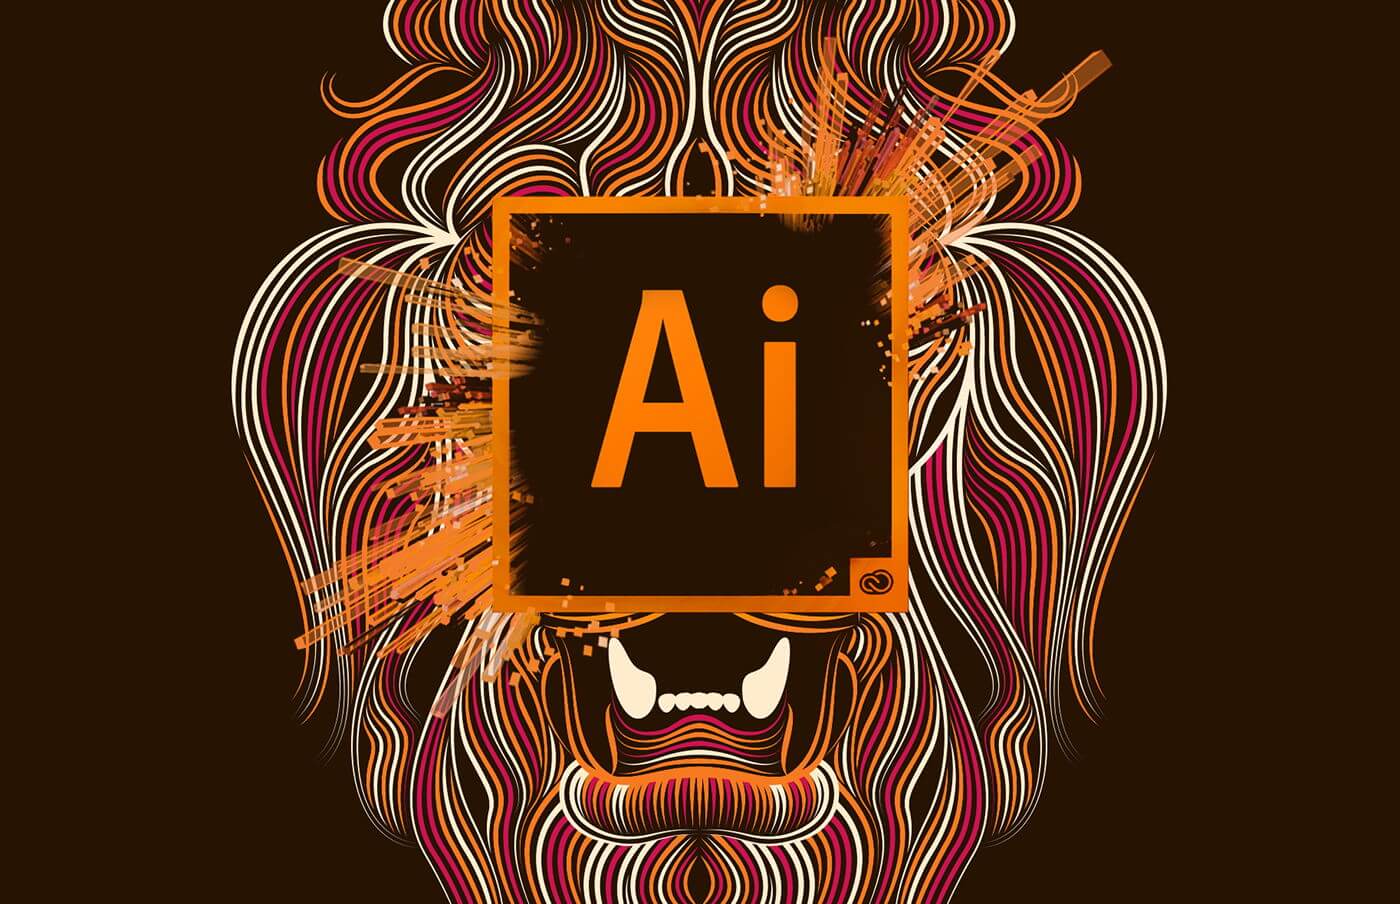 adobe illustrator download fonts